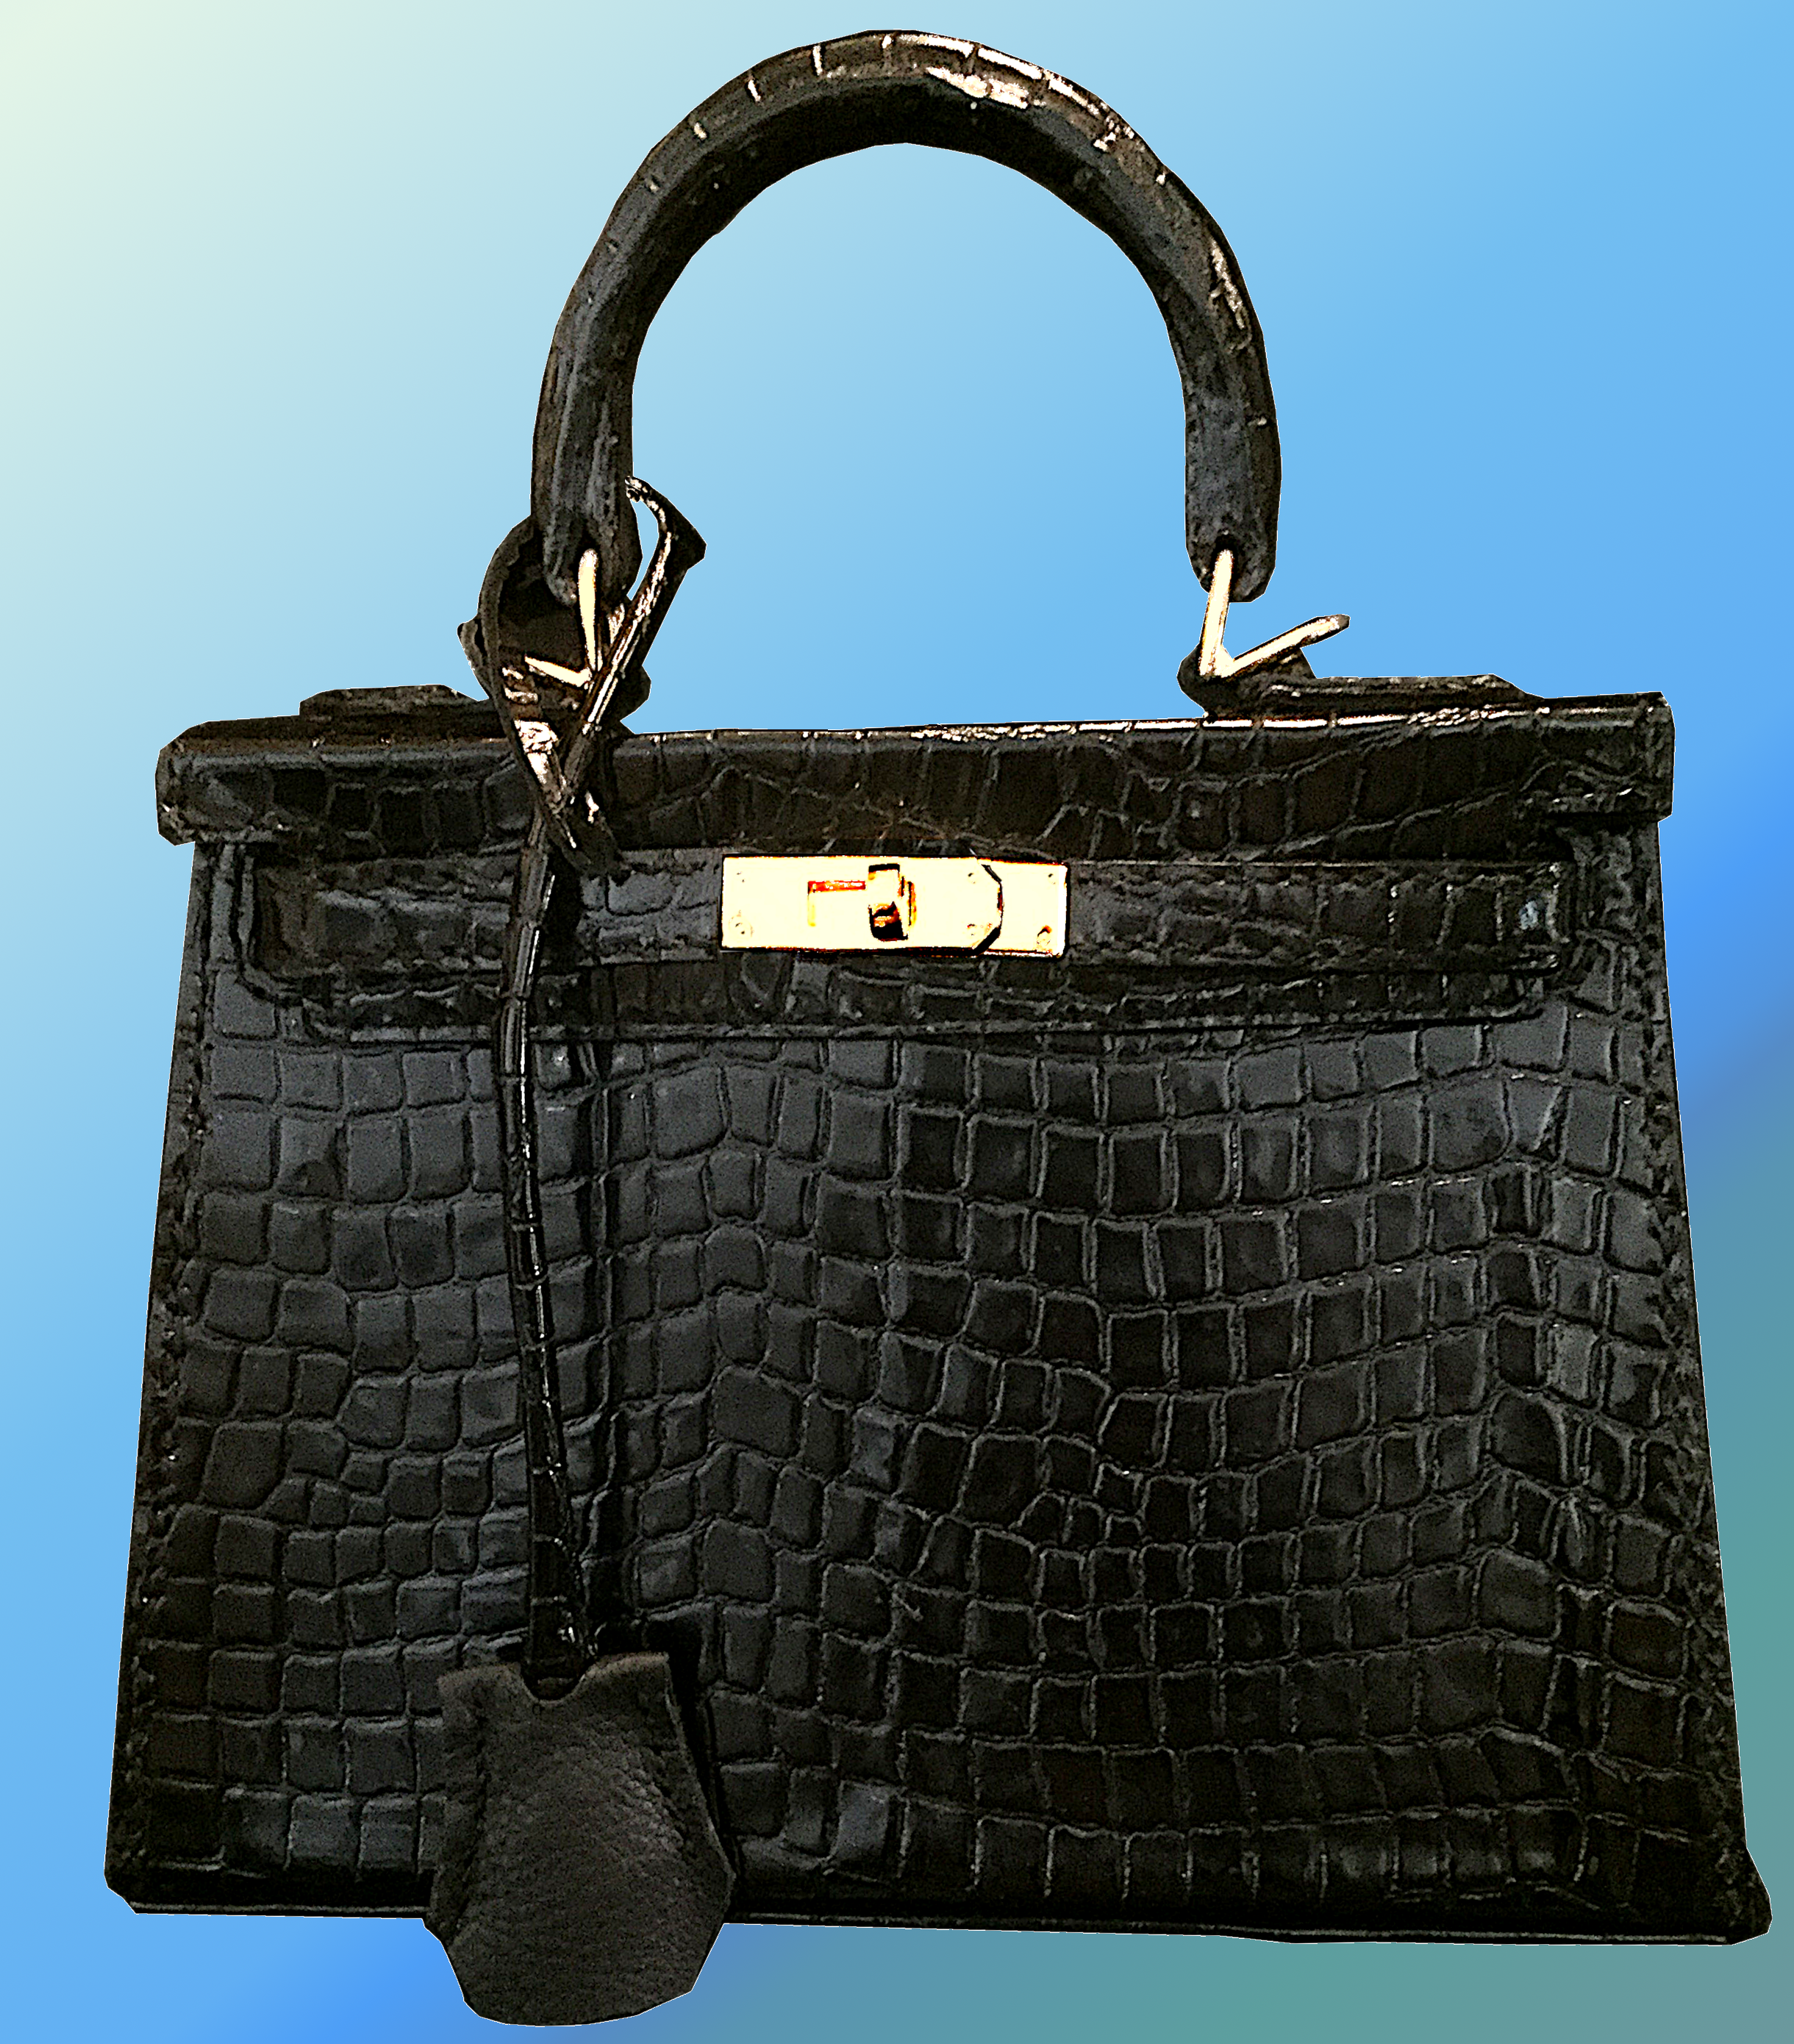 Leather bag pattern, Hermes kelly bag, Kelly bag